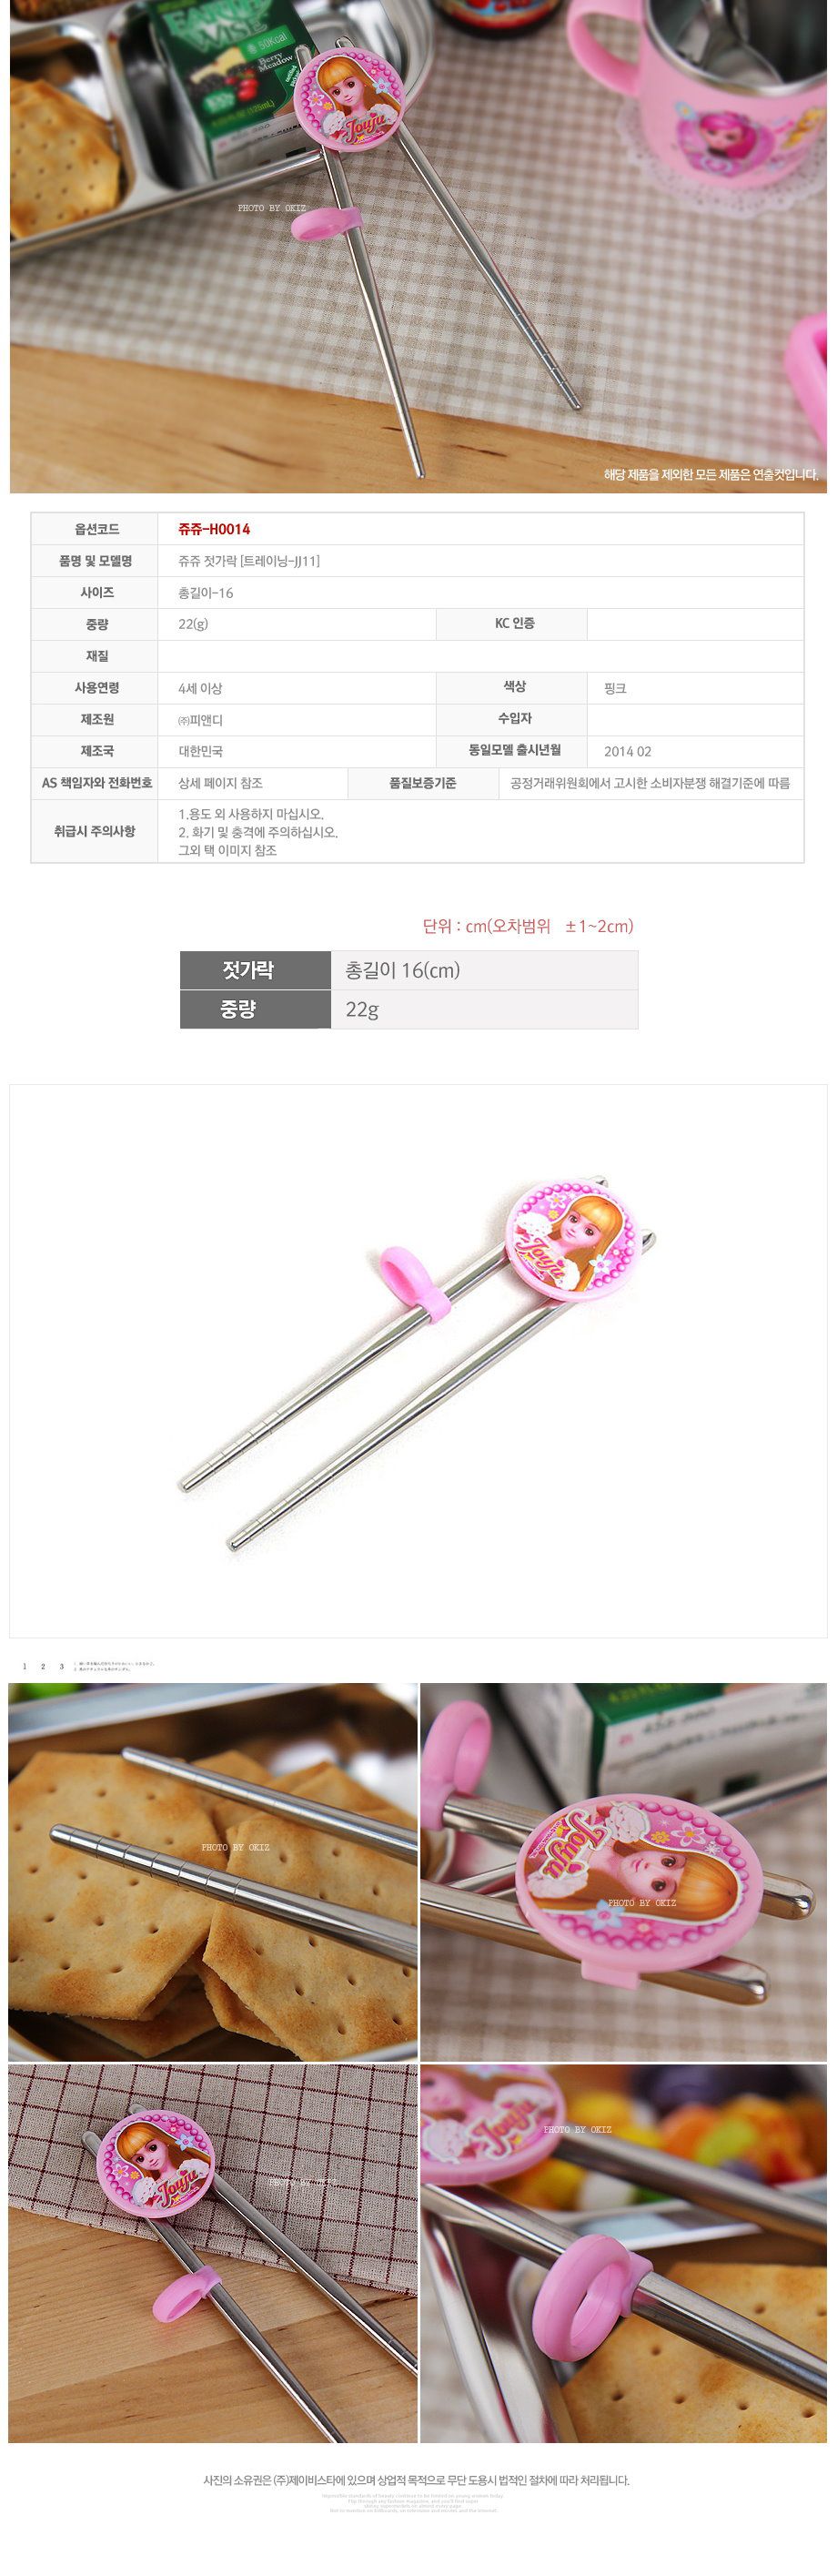 韓國製茱莉公主不鏽鋼學習筷